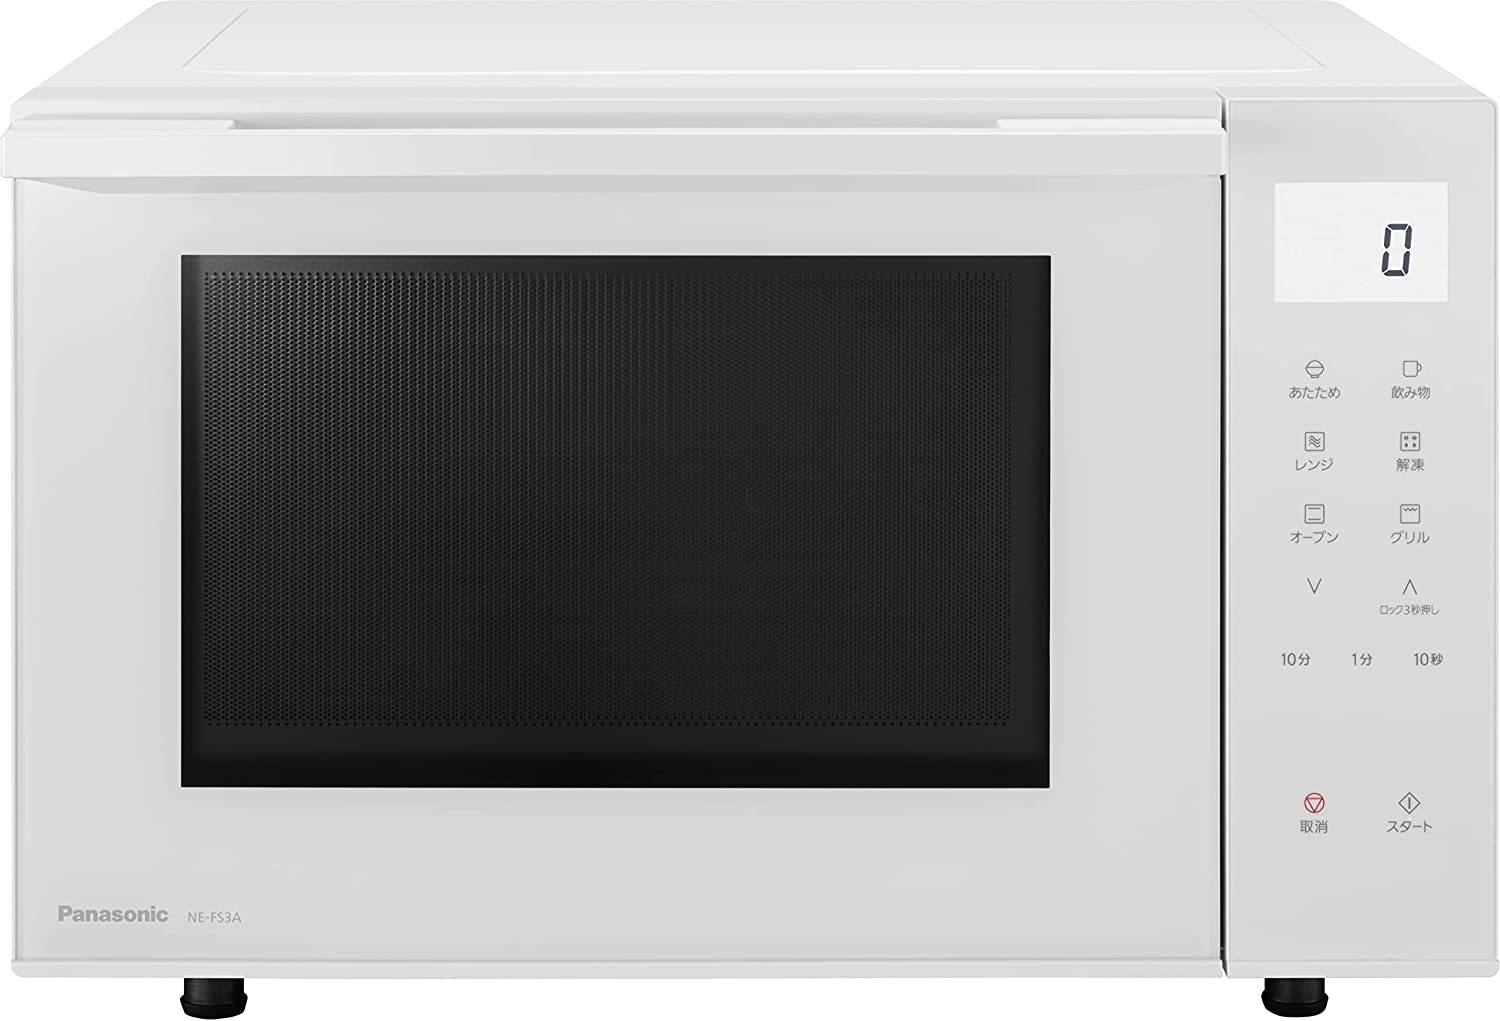 日本代購 空運 2022新款 Panasonic 國際牌 NE-FS3A 微波烤箱 23L 微波爐 烤箱 烘烤爐 白色